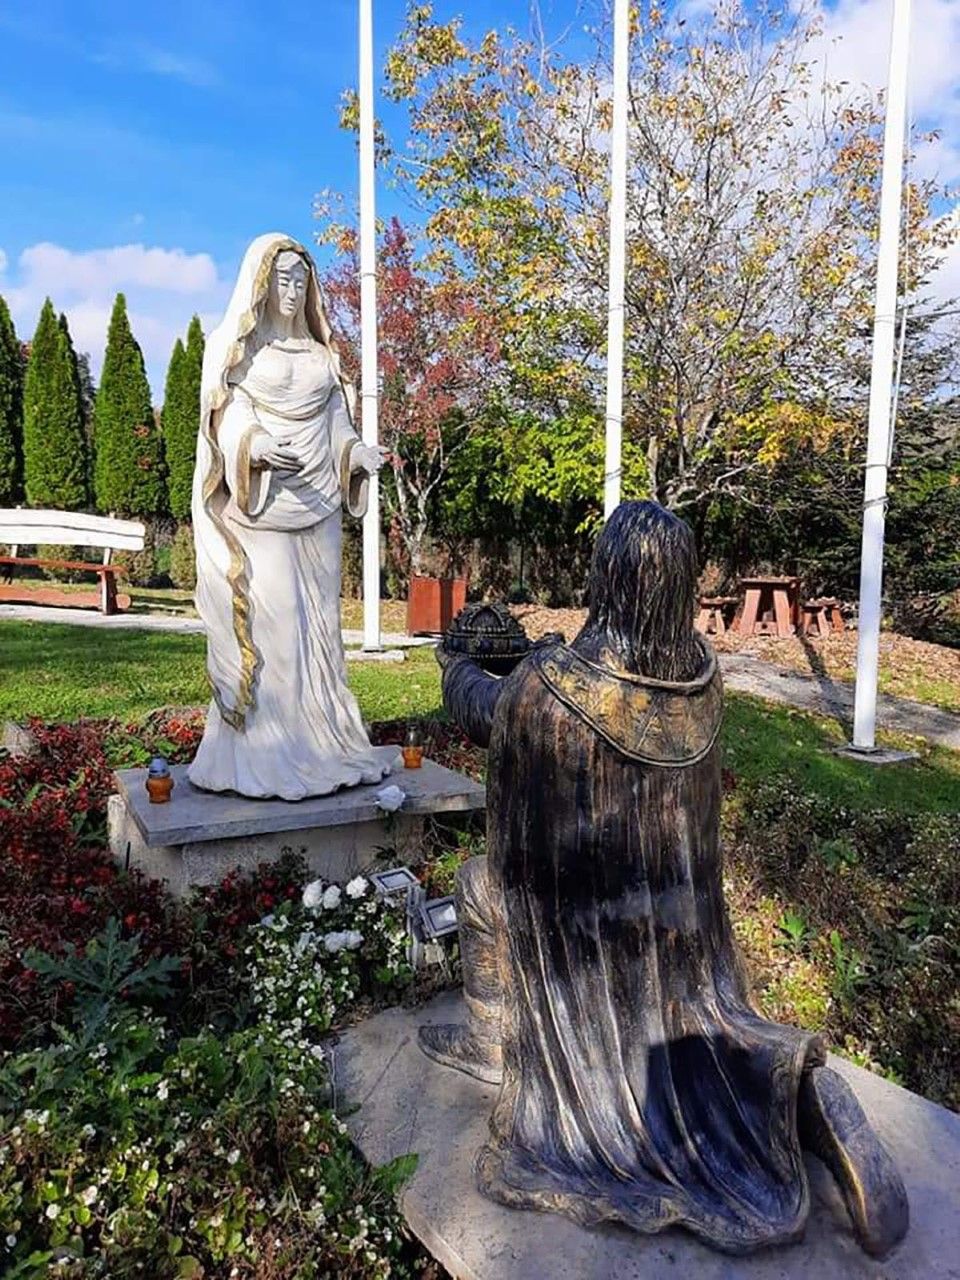 A magyar államalapítás előtt is tiszteleg a park egy szoborral, ami azt ábrázolja, hogy Szent István a Szűzanya oltalmába ajánlja országát